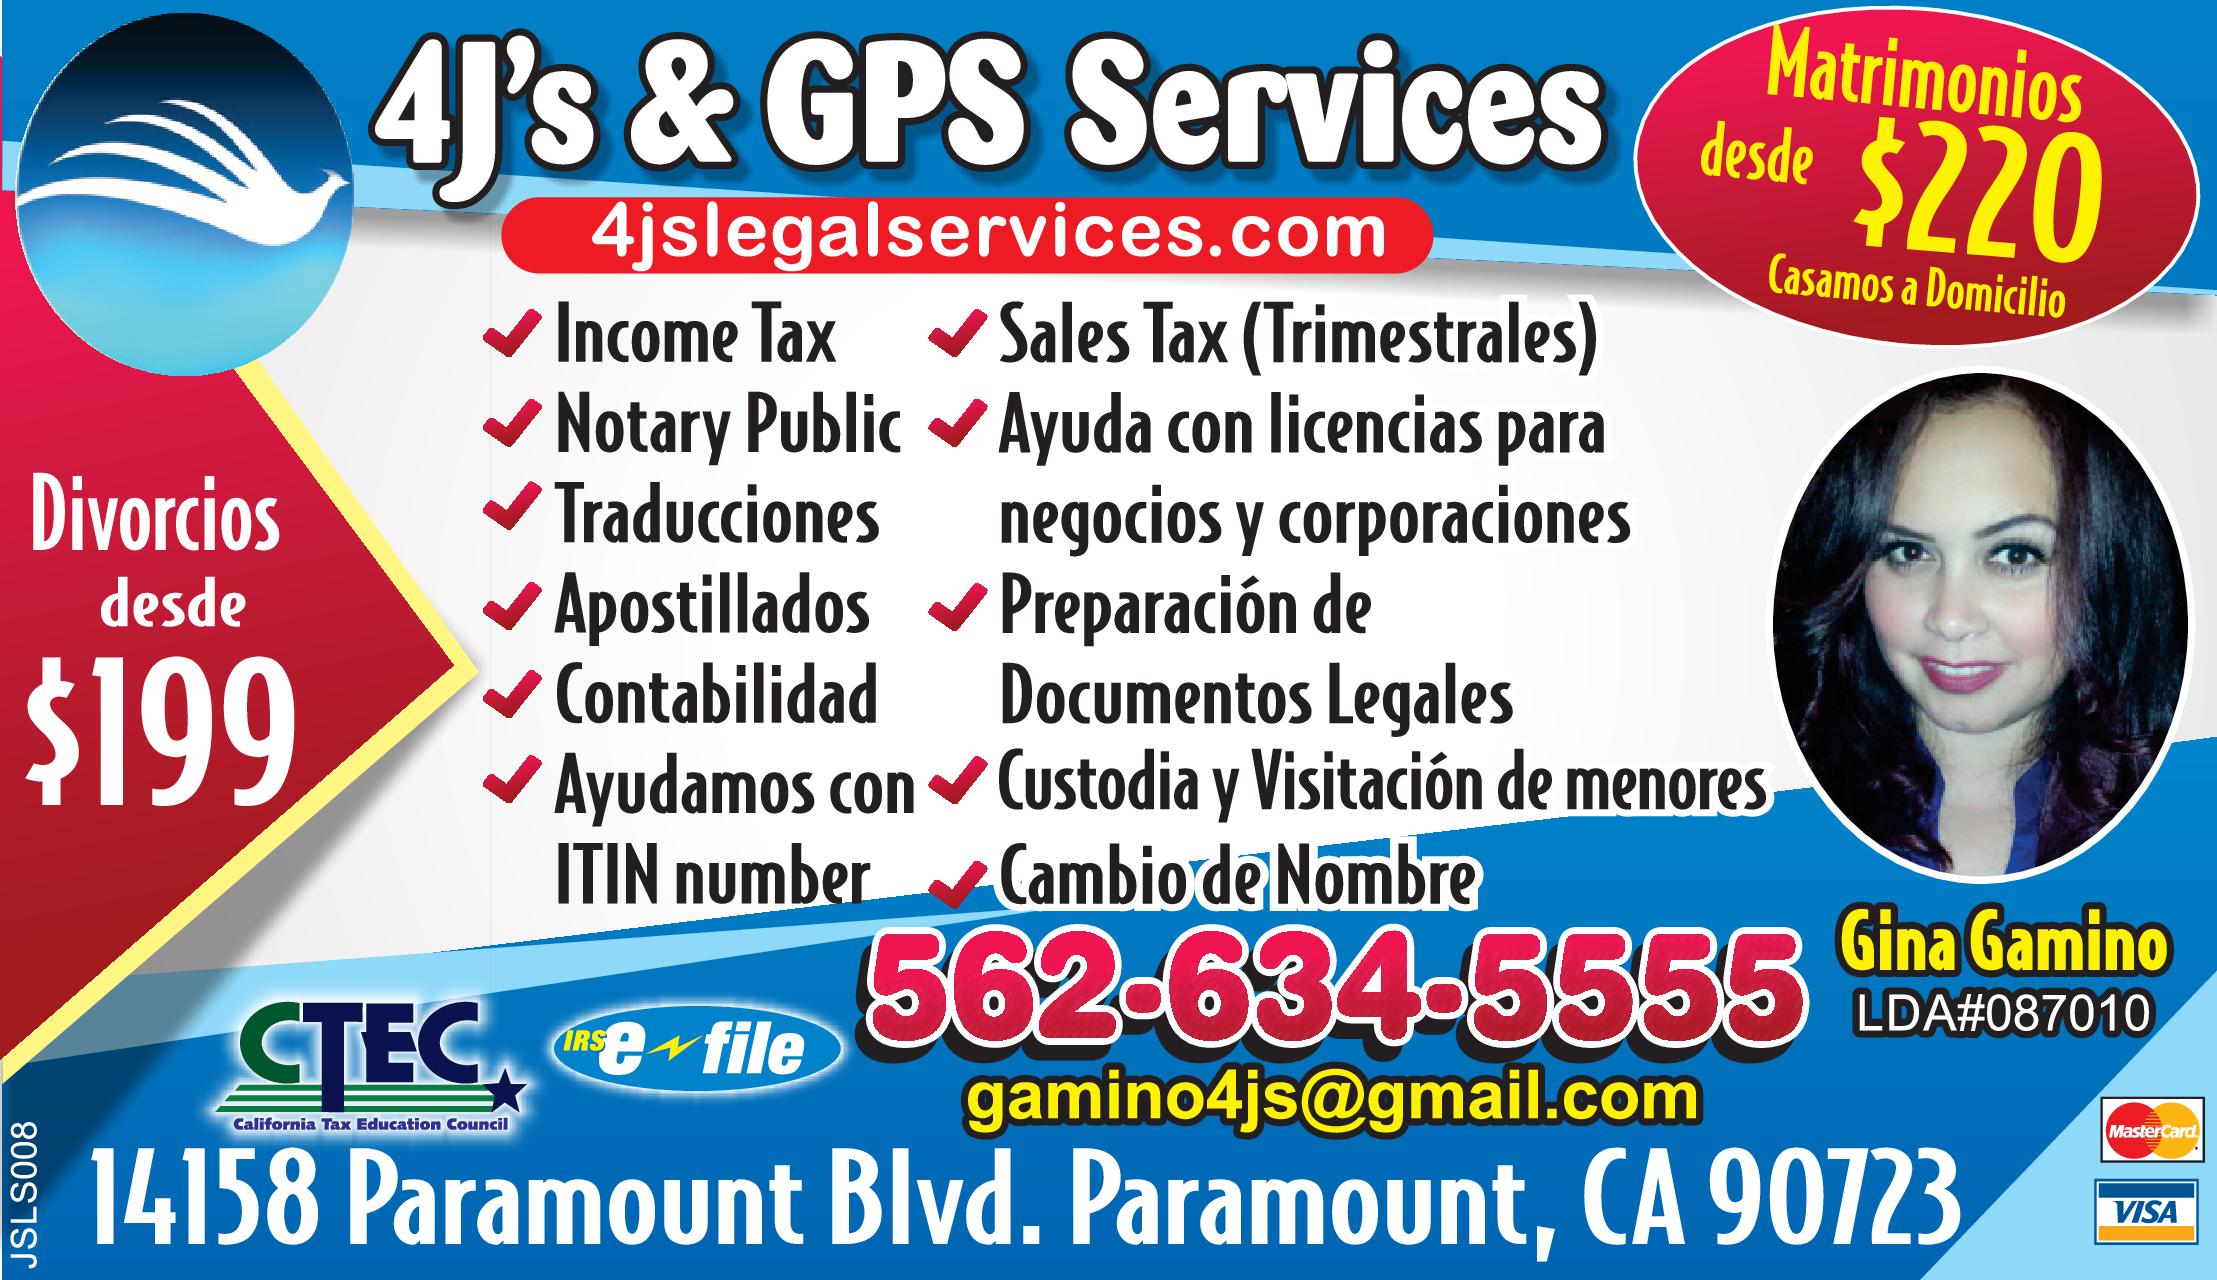 4J'S GPS SERVICES